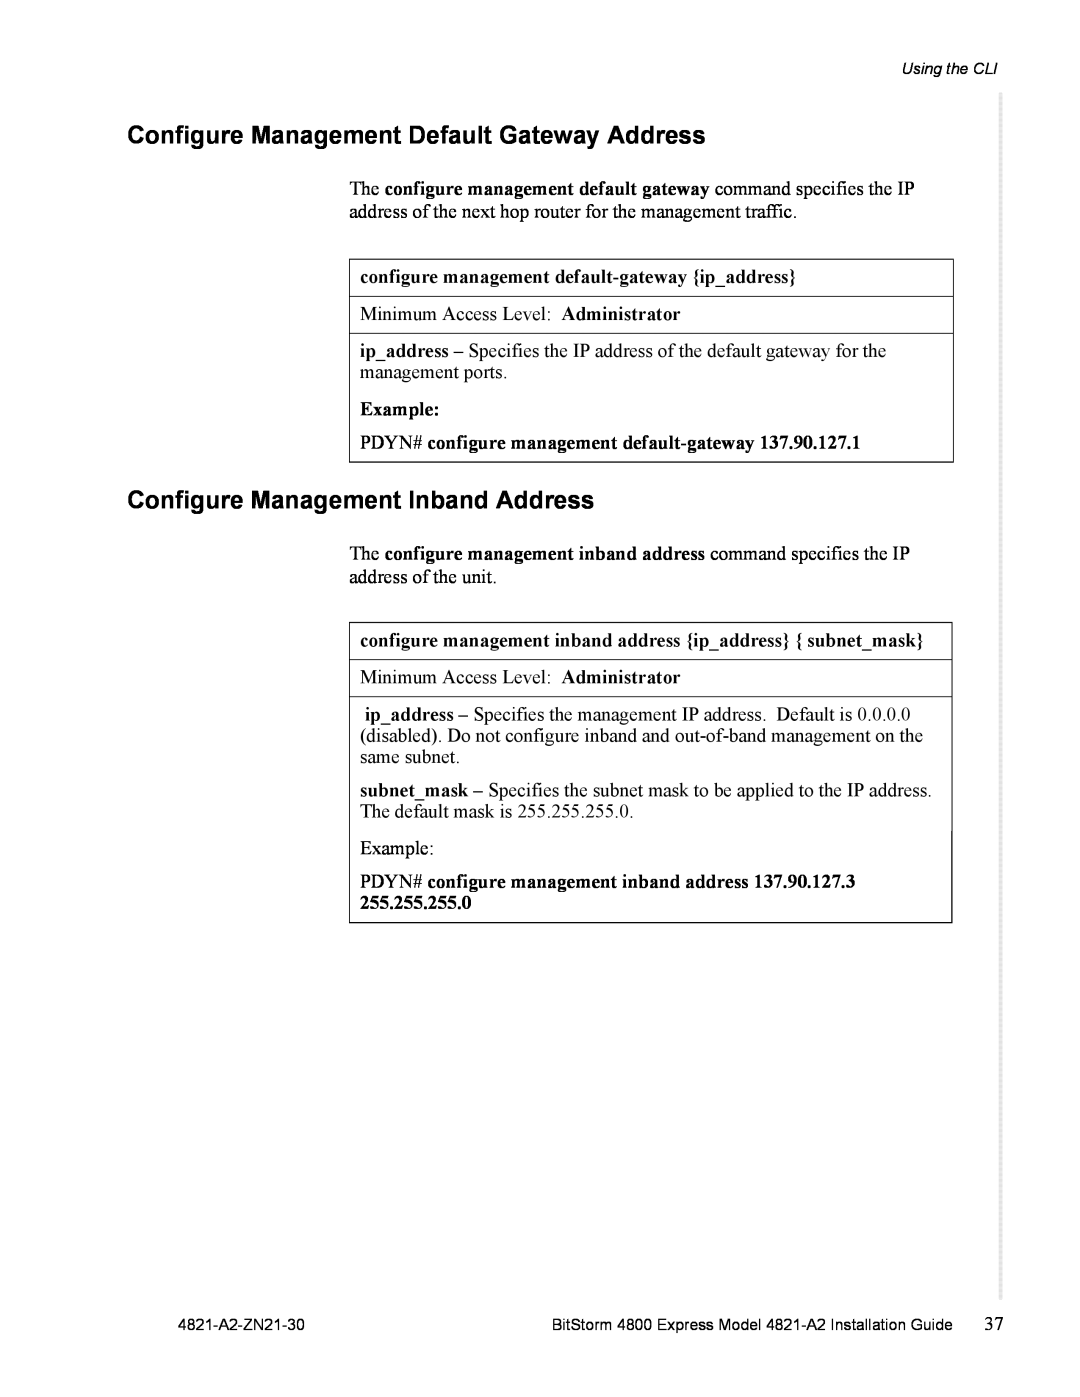 Zhone Technologies 4821-A2 manual Configure Management Default Gateway Address, Configure Management Inband Address 